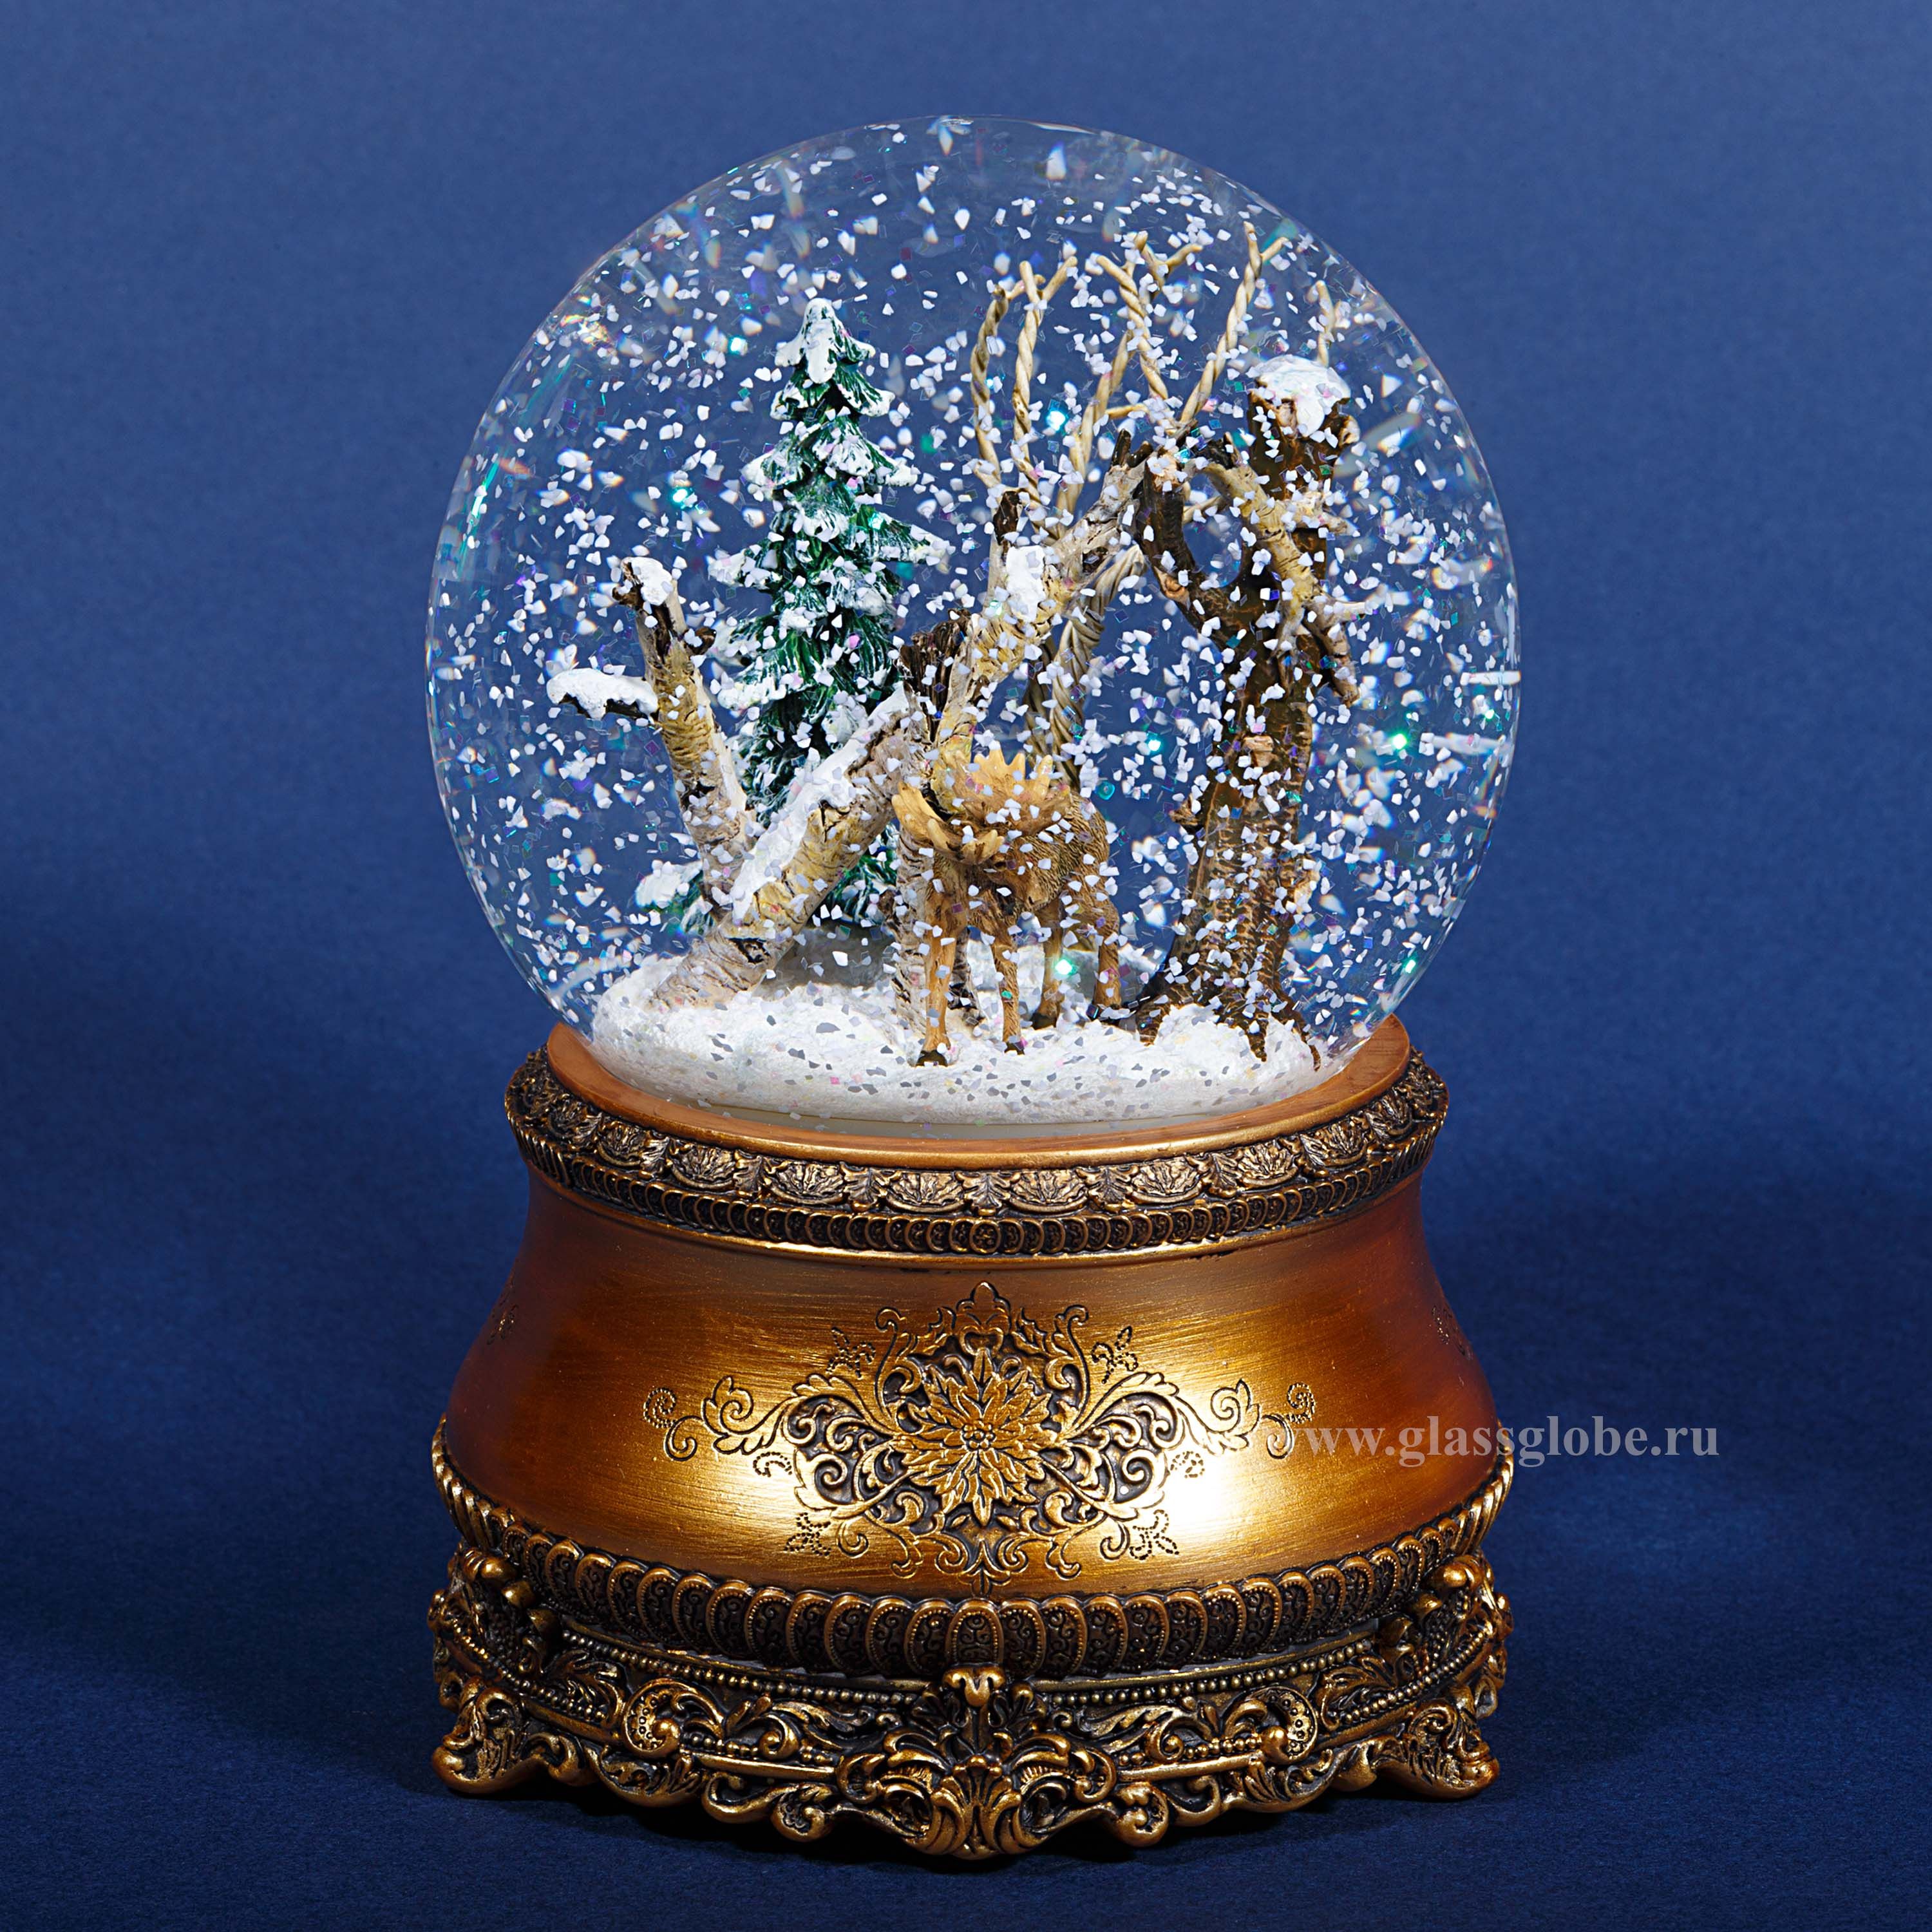 М кв в шаре. Снежный шар Glassglobe. Снежный шар Glassglobe "домик в лесу". Стеклянный шар со снегом. Снежный шар музыкальный.